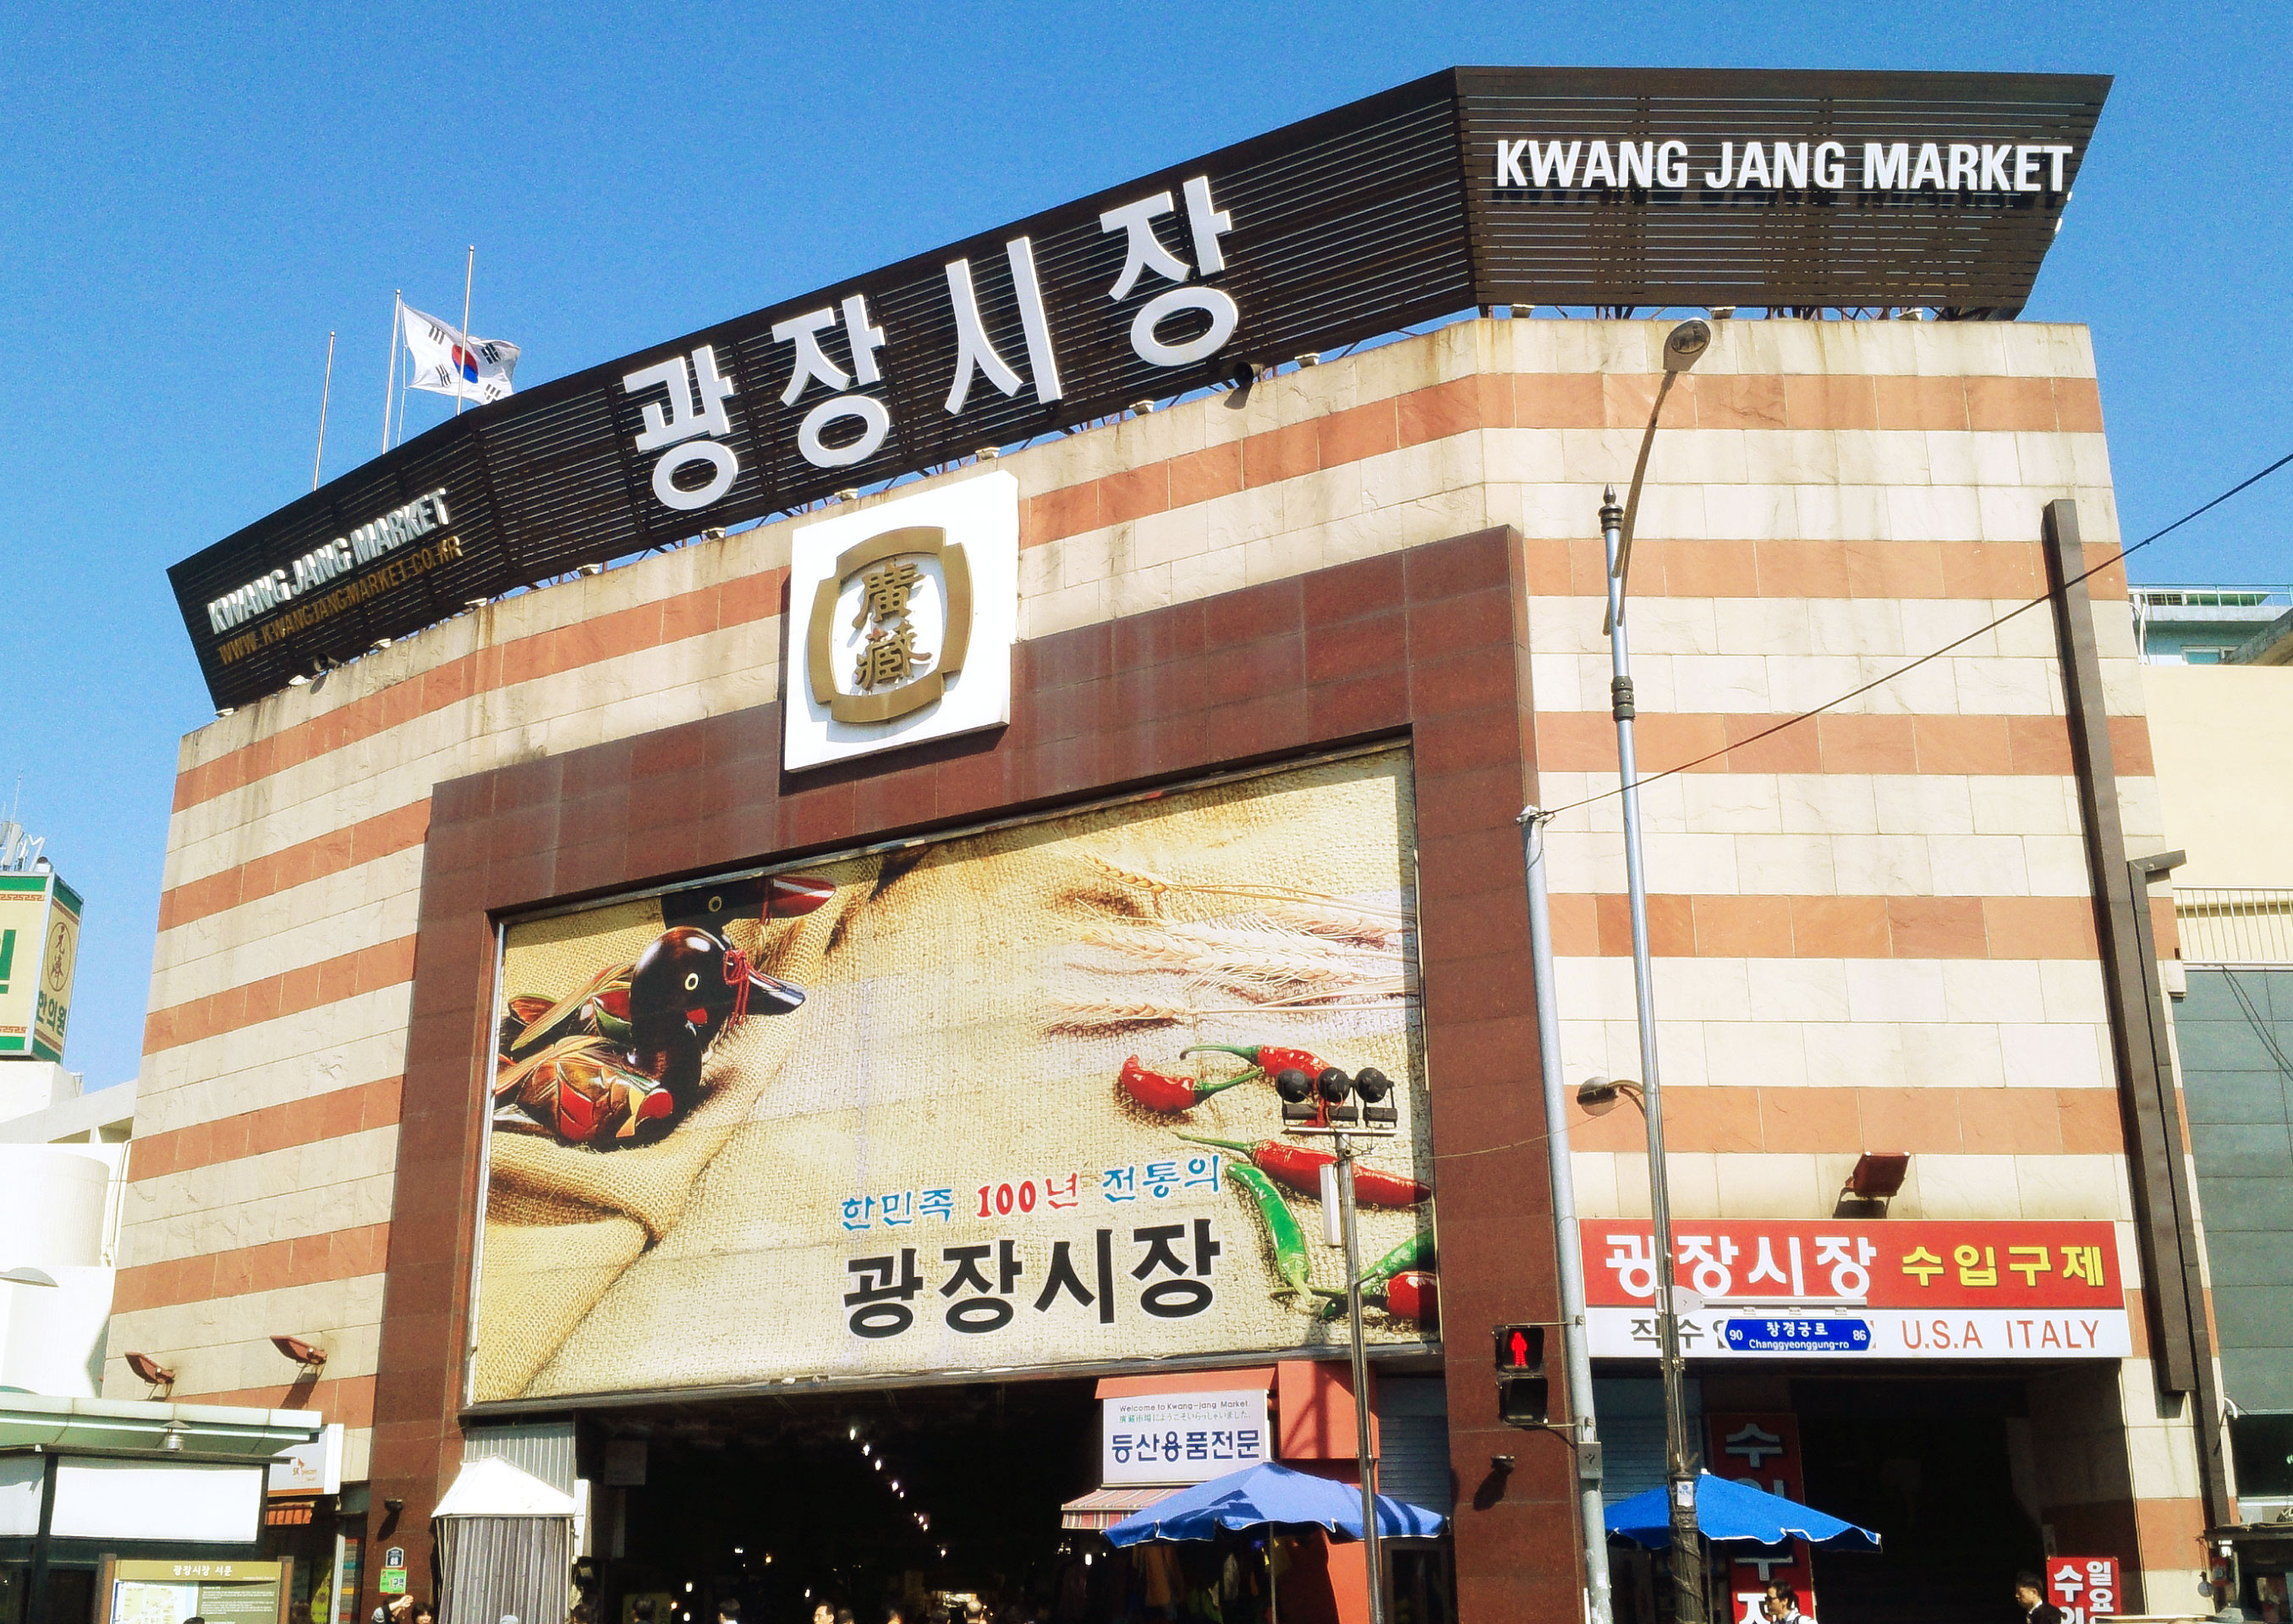 Gwangjangmarket_mainentrance.jpg